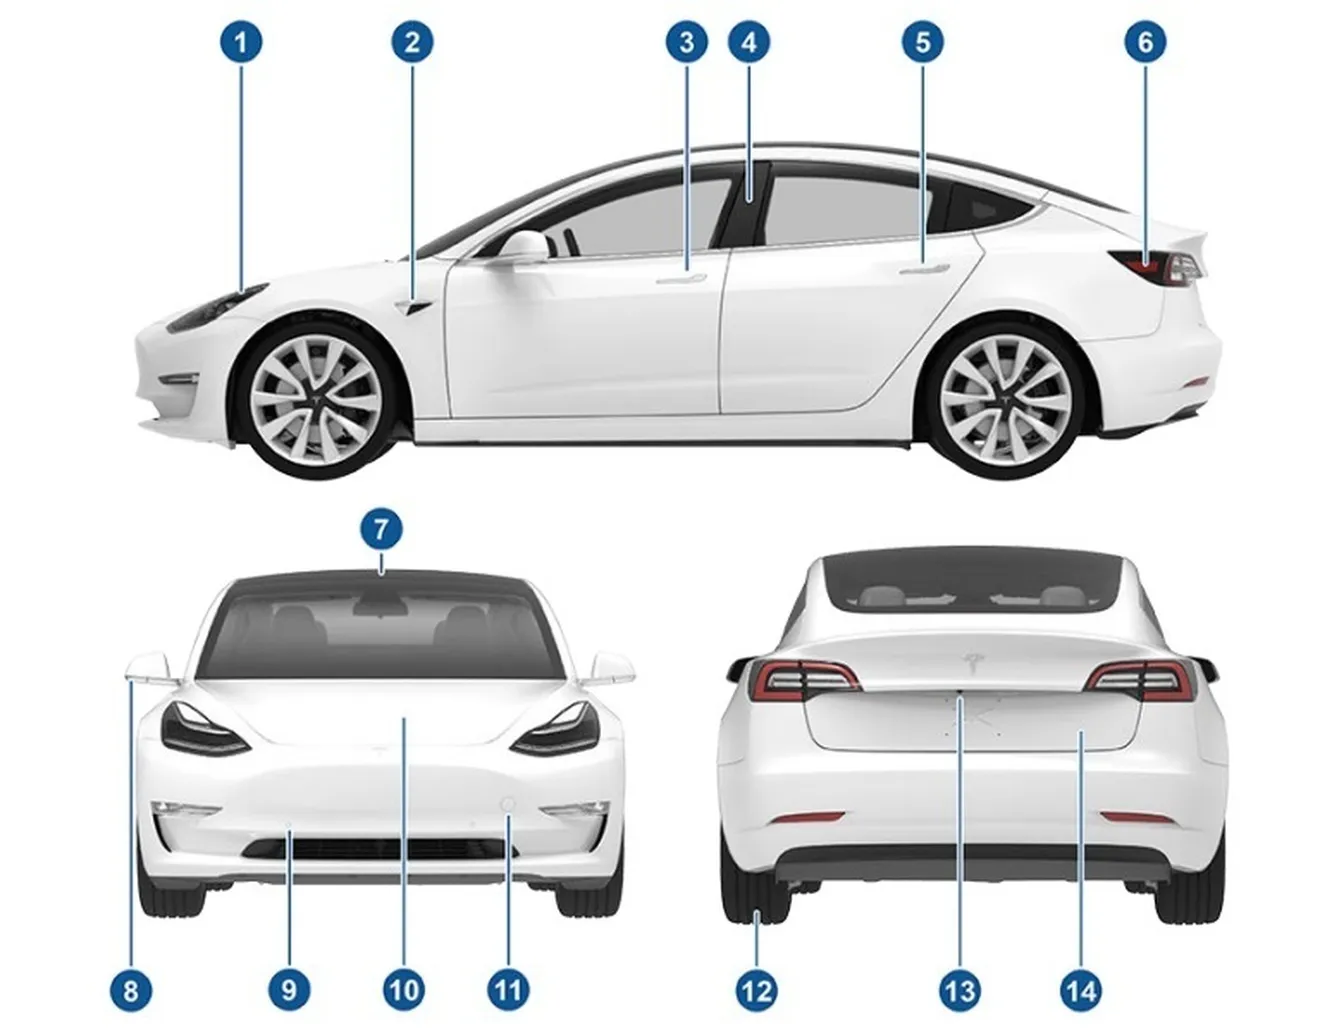 Filtrado el manual de usuario completo del Tesla Model 3